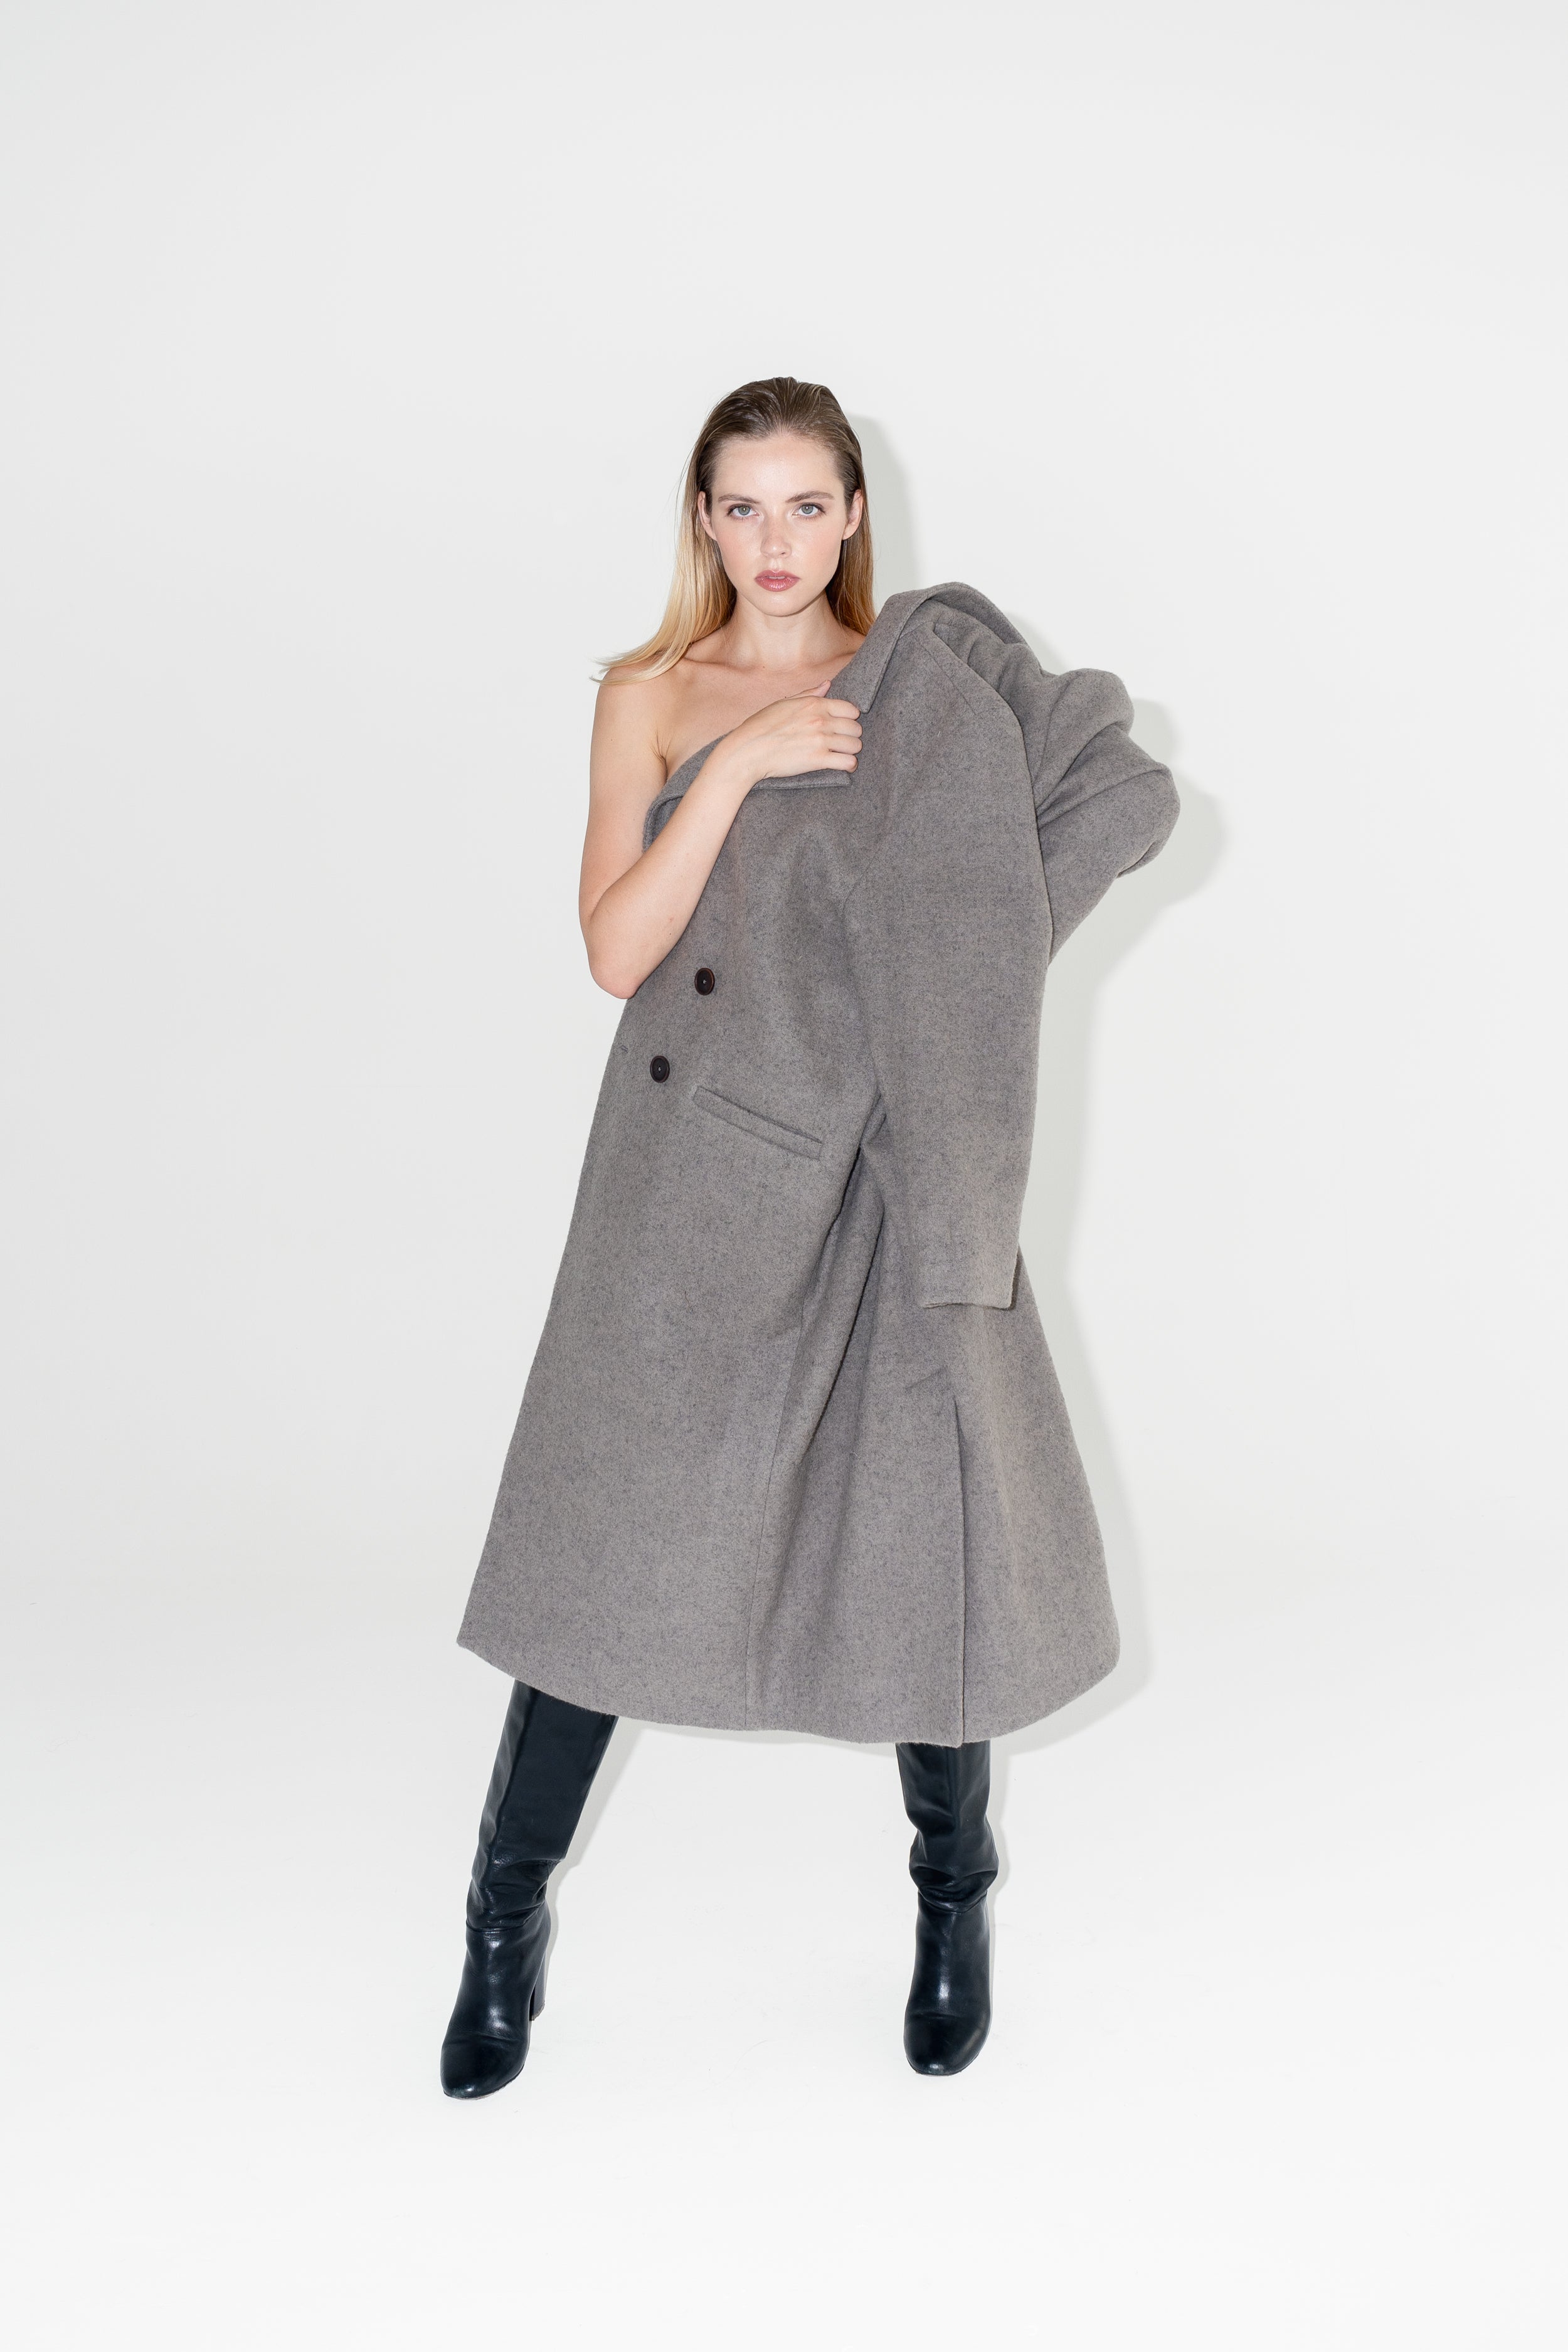 Dámský oversized dvouřadý kabát z organické vlny. Zimní Kabát Beyond Ordinary má dvouřadý oversized střih, čisté linie a výrazné knoflíky s černými kozačkami na podpatku. ADVA Studios